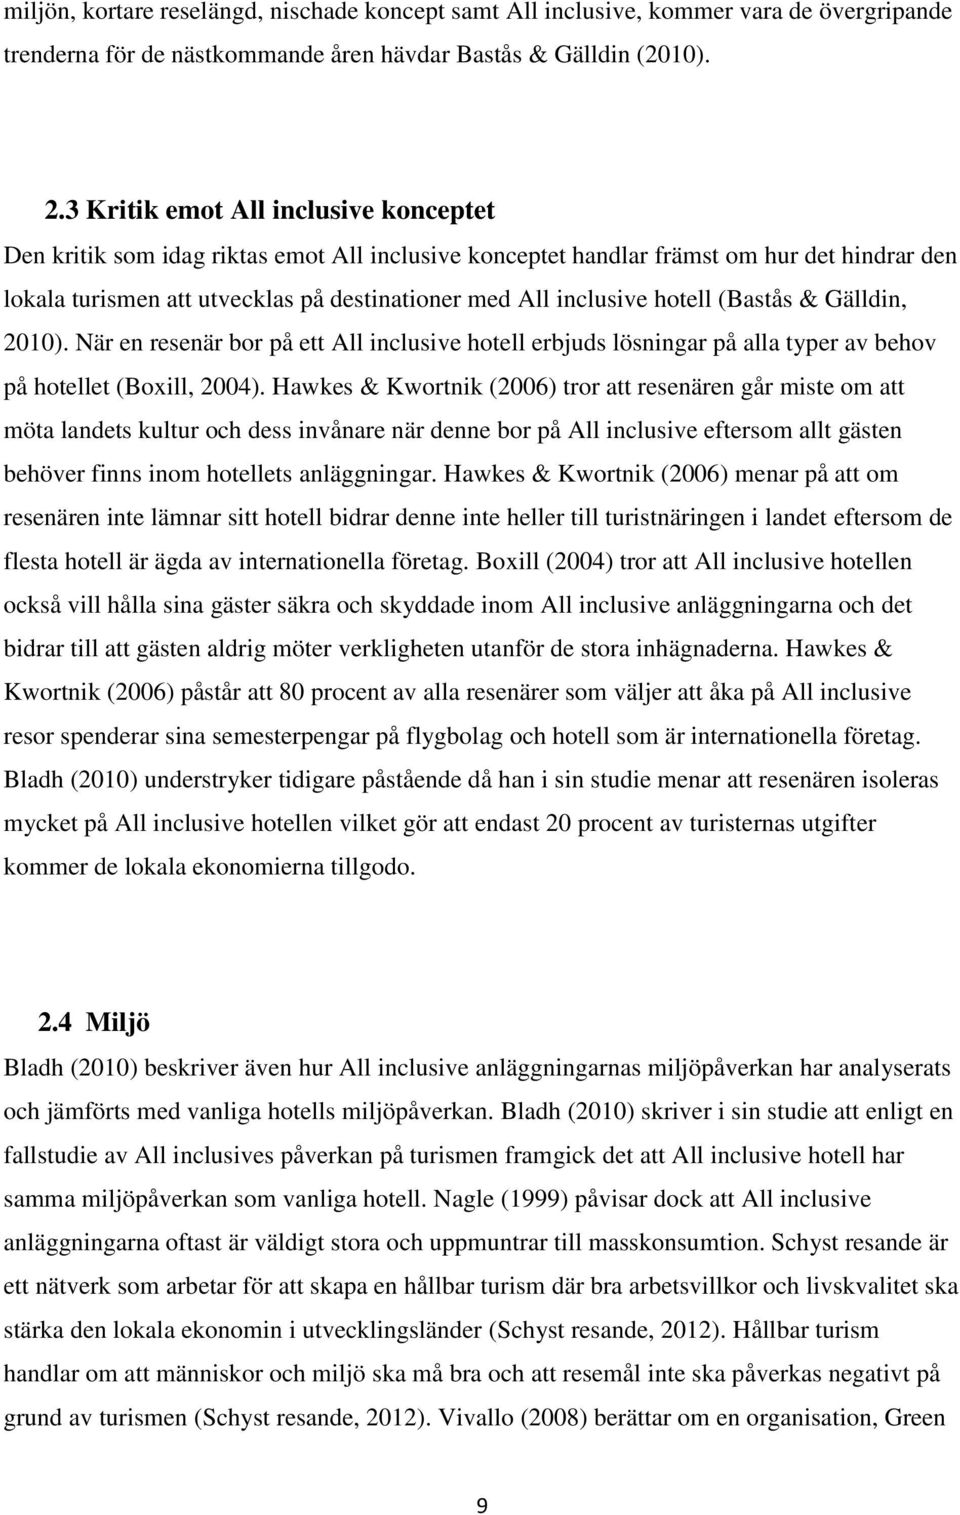 hotell (Bastås & Gälldin, 2010). När en resenär bor på ett All inclusive hotell erbjuds lösningar på alla typer av behov på hotellet (Boxill, 2004).